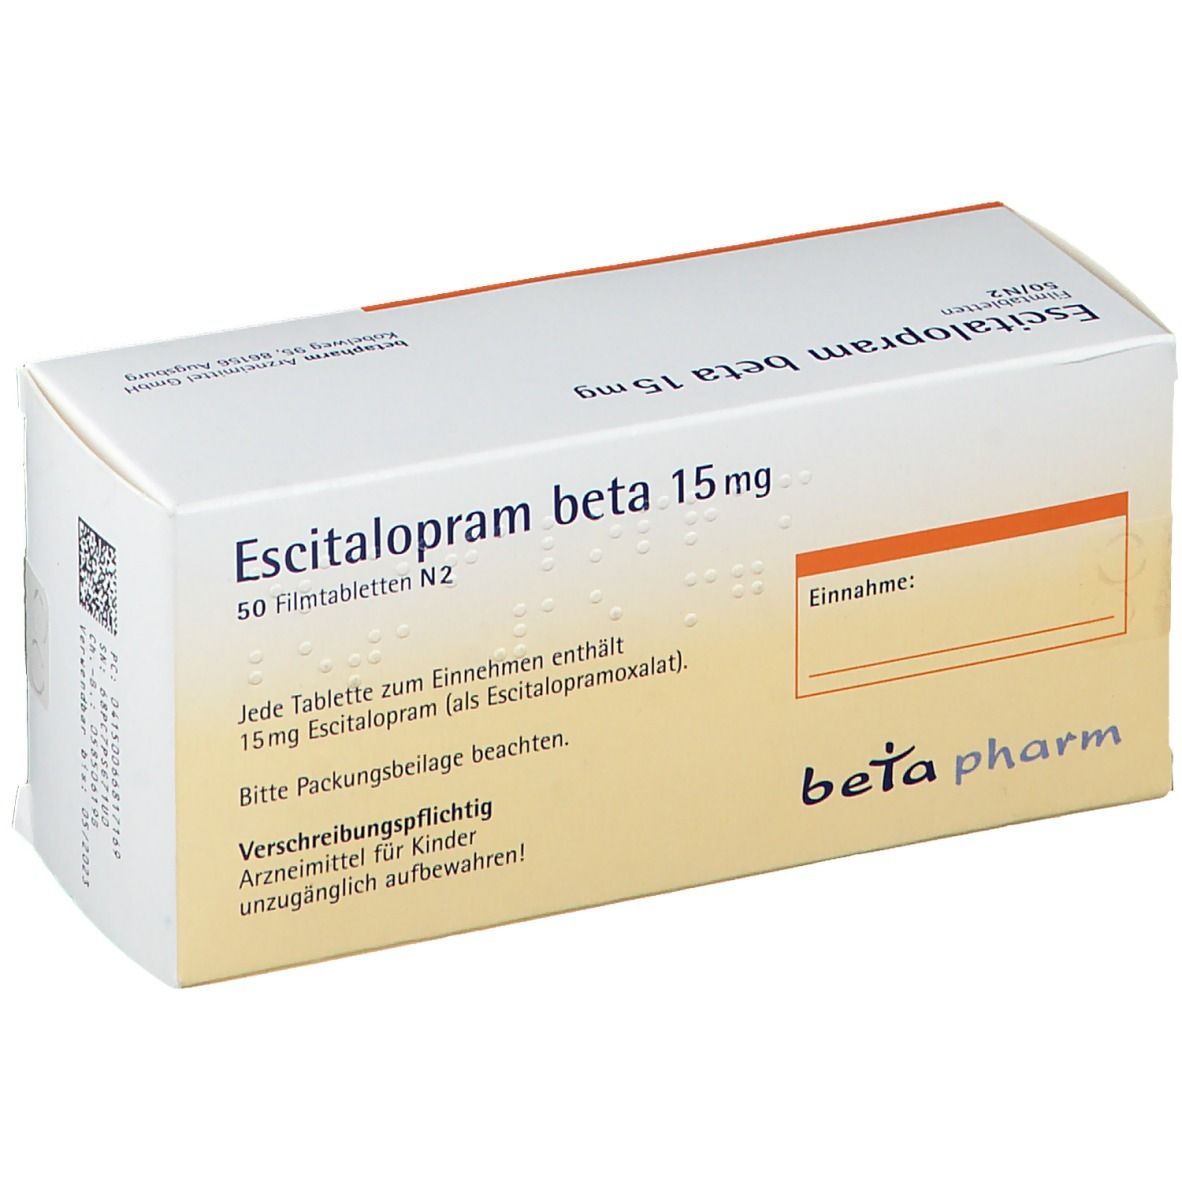 Escitalopram beta 15 mg